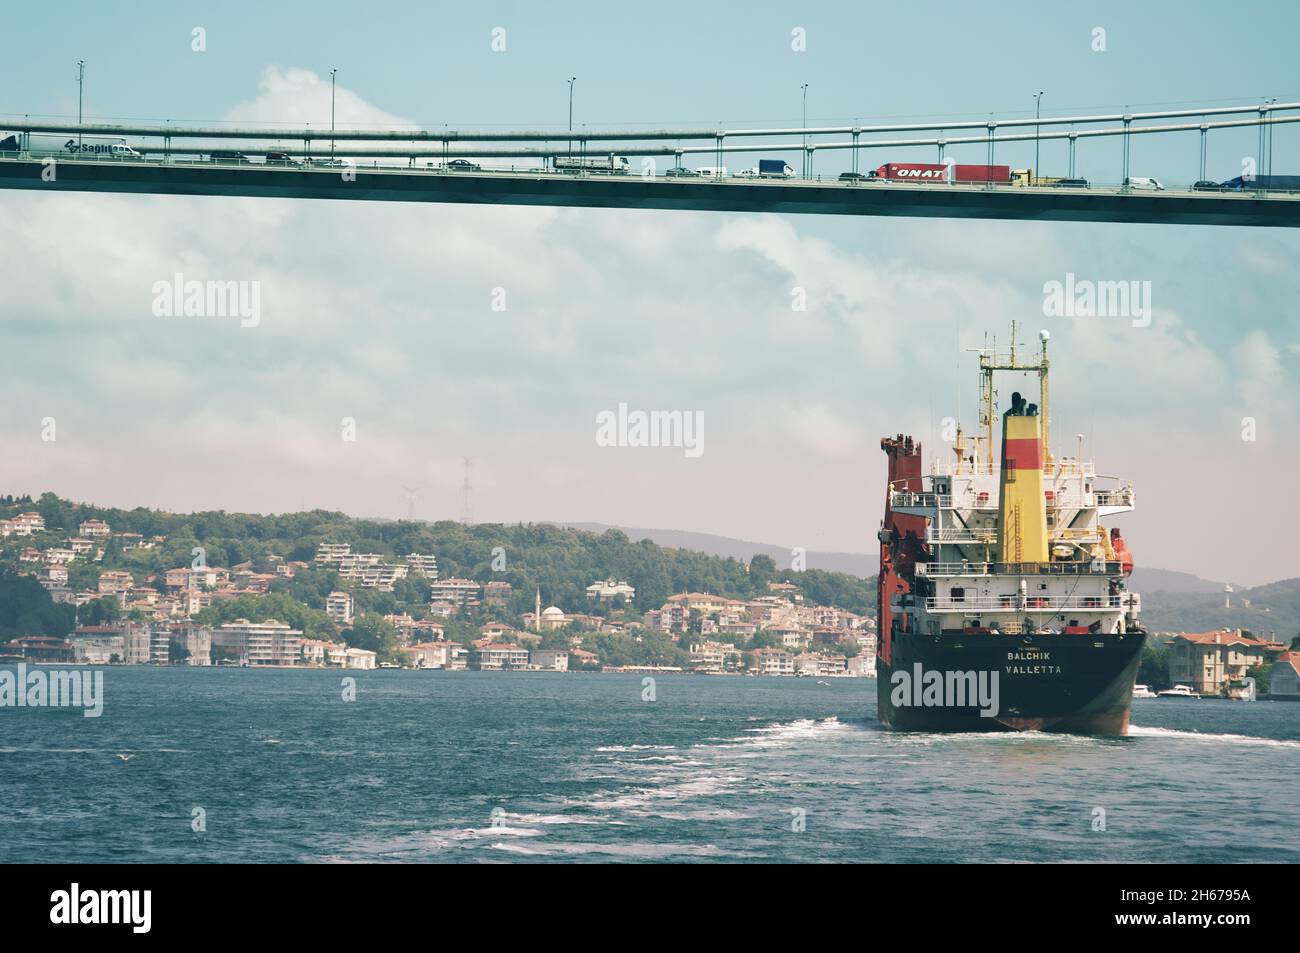 Scena urbana dello stretto del Bosforo con una nave da carico che attraversa il ponte occupato di veicoli in fila, la Turchia Foto Stock